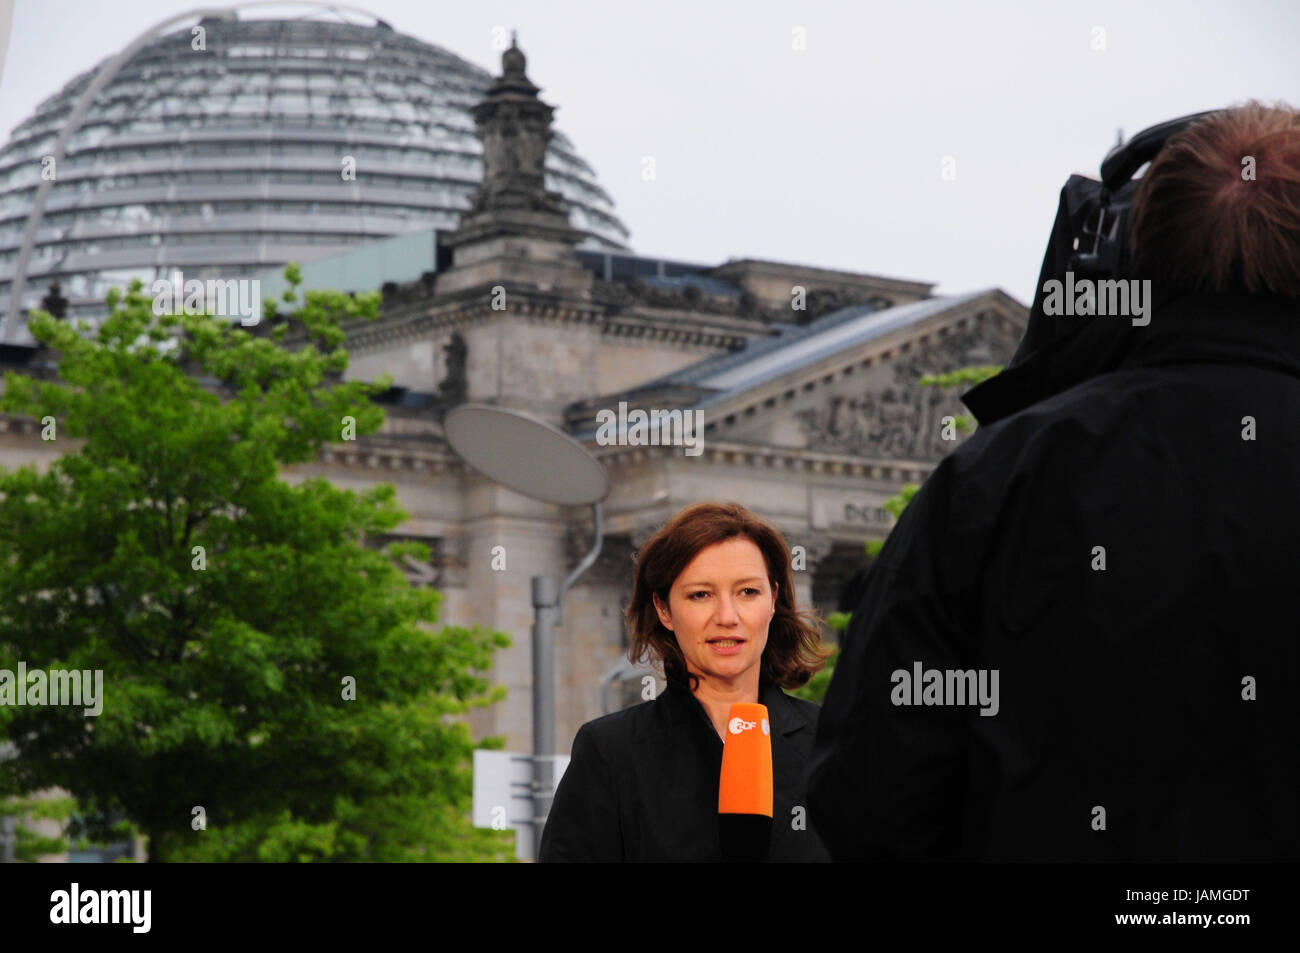 Alemania,Berlín,Reichstag,equipo de televisión ZDF,periodista,mensajes, Foto de stock